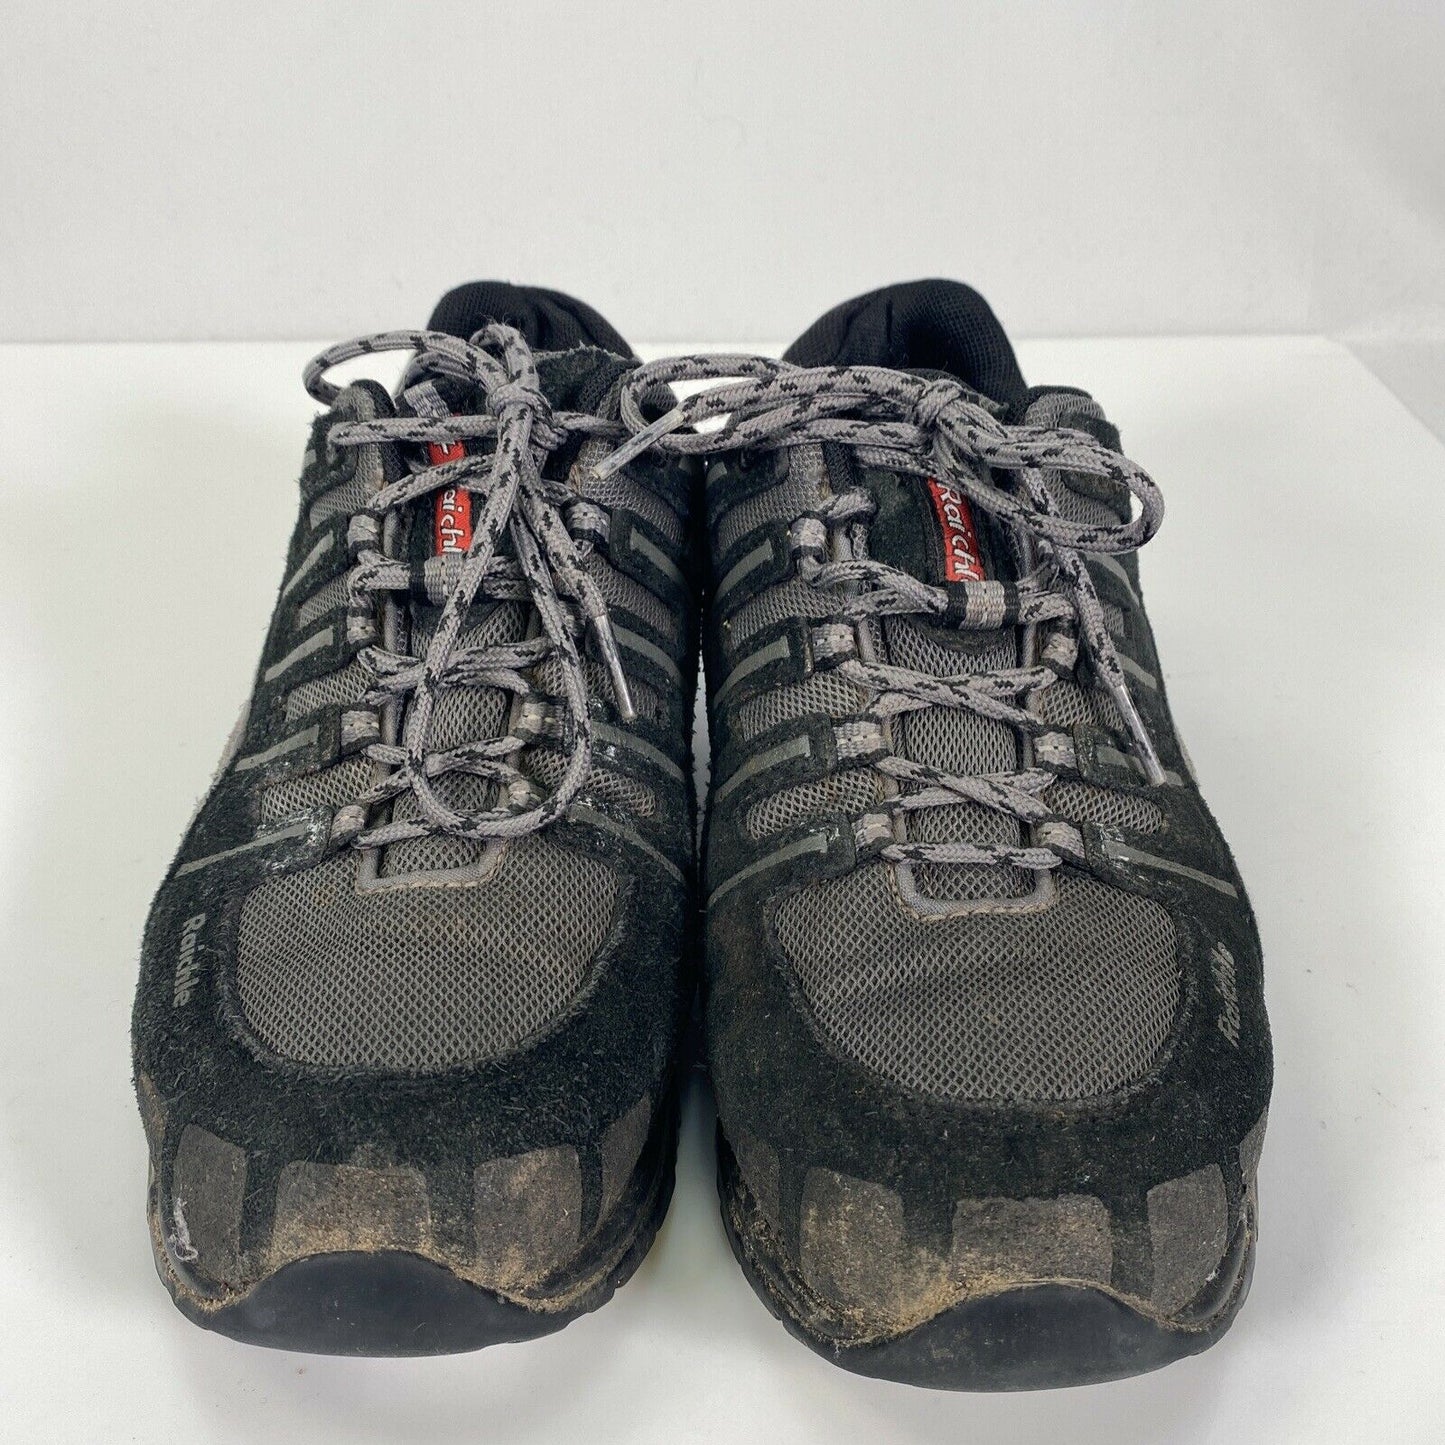 Raichle Women's Black Mesh Lace Up Low Cut Work Shoes Boots Sz 7.5